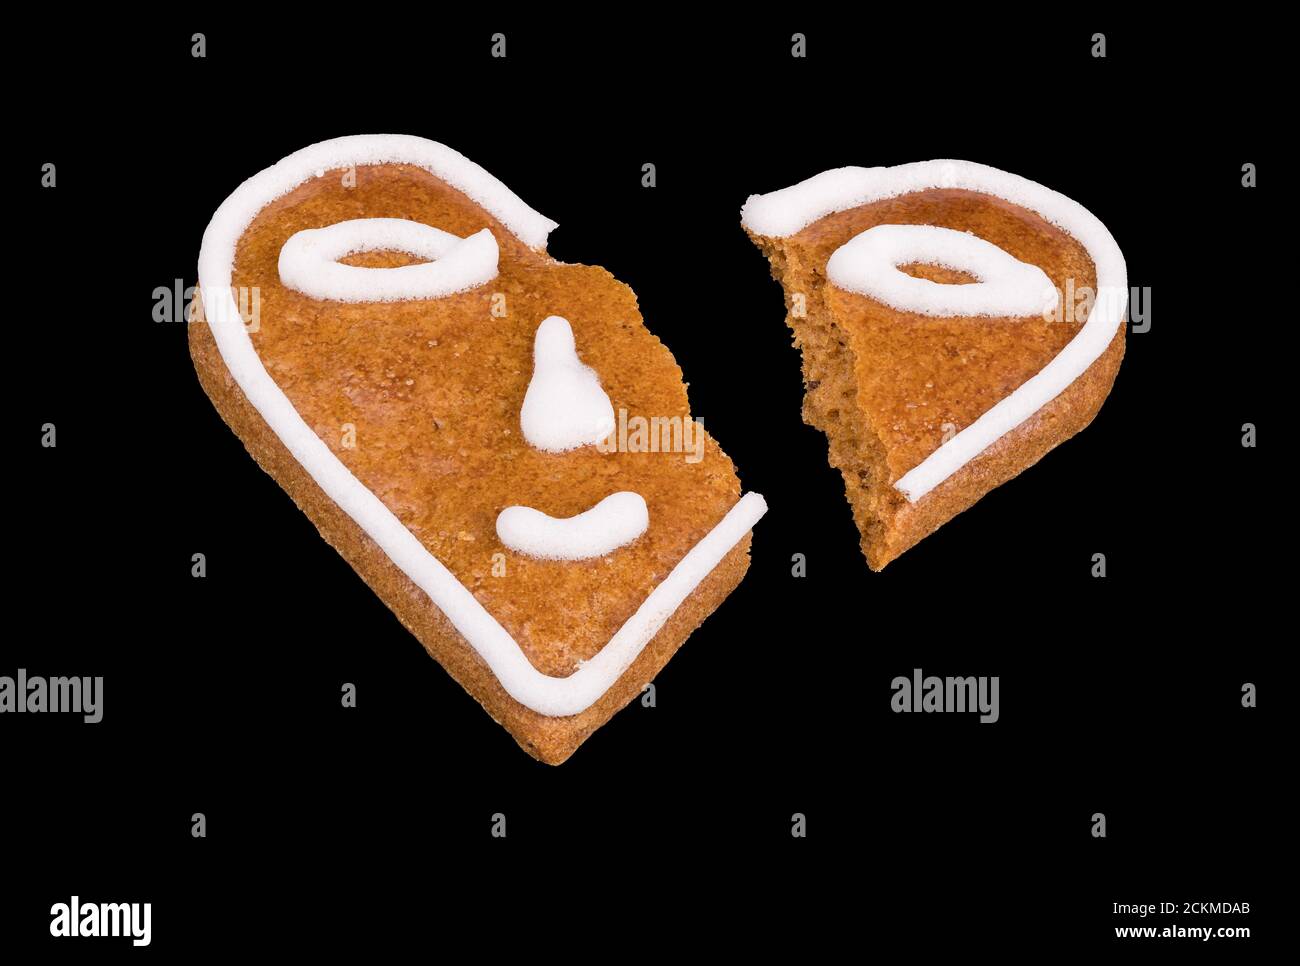 Cuore rotto da pan di zenzero cotto decorato da smiley isolato su uno sfondo nero. Emoticon sorridente diviso in due parti. Fine simbolica dell'amore. Foto Stock